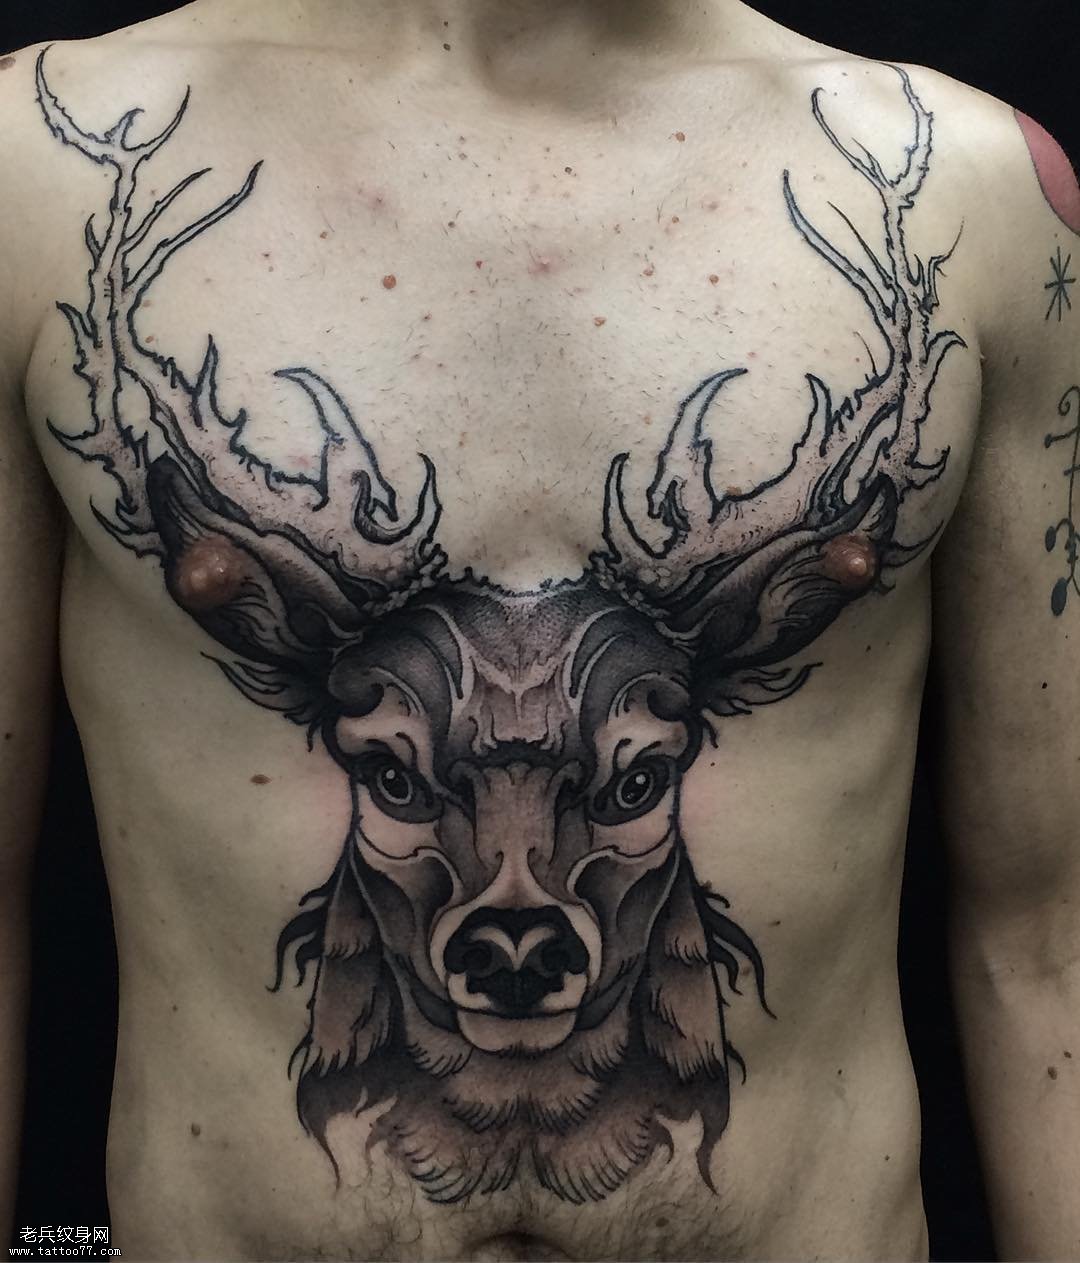 胸前大面积麋鹿头纹身图案